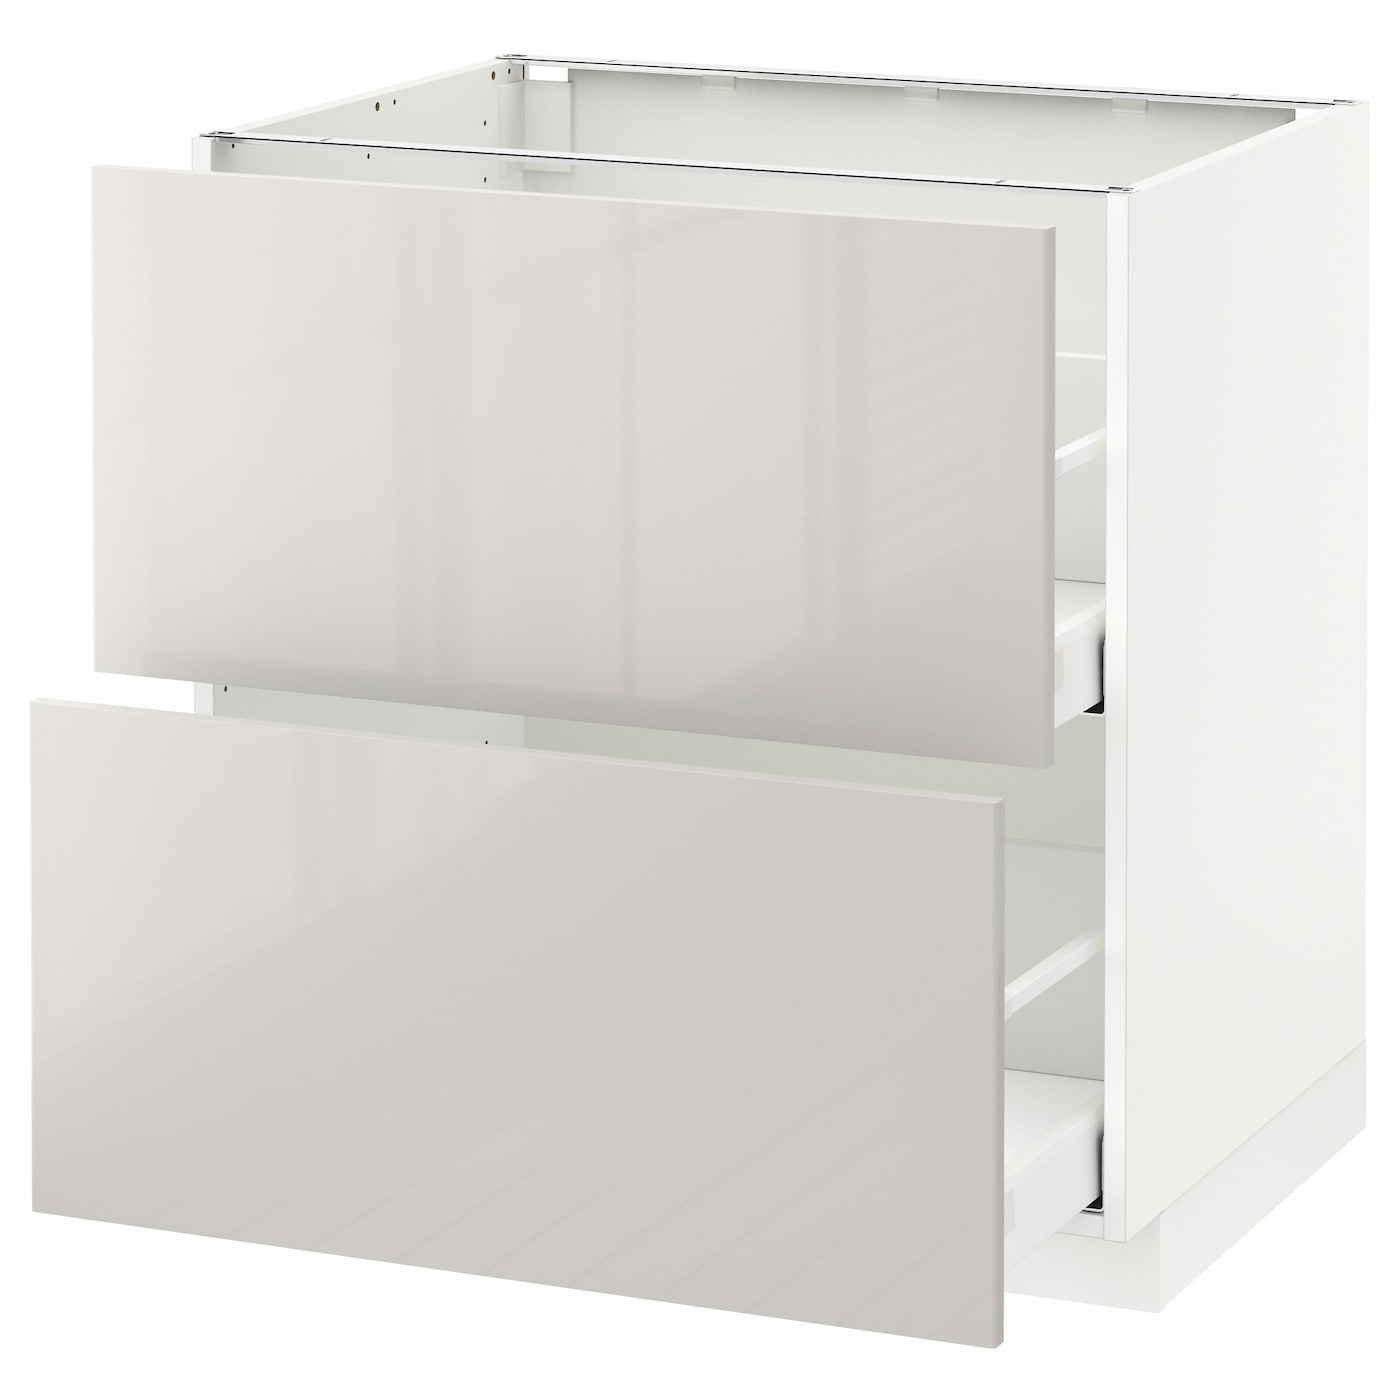 Напольный кухонный шкаф  - IKEA METOD MAXIMERA, 88x62x80см, белый/светло-серый, МЕТОД МАКСИМЕРА ИКЕА